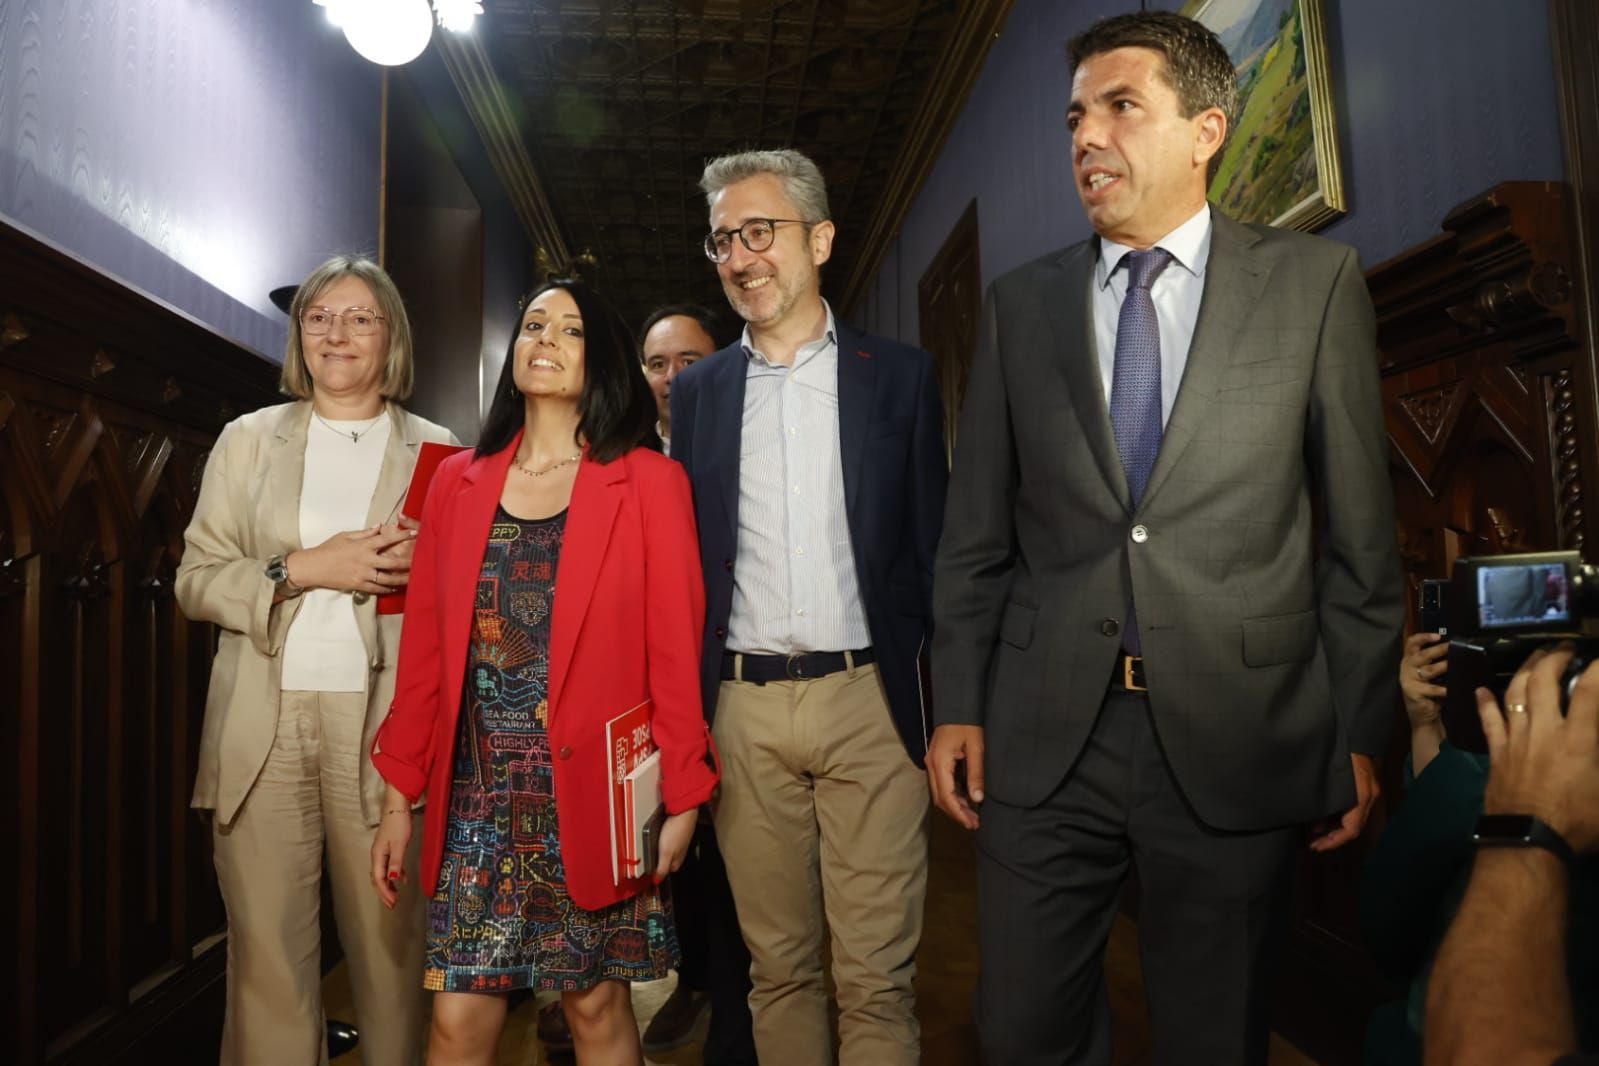 Mazón inicia con el PSPV-PSOE el primer encuentro sobre su investidura